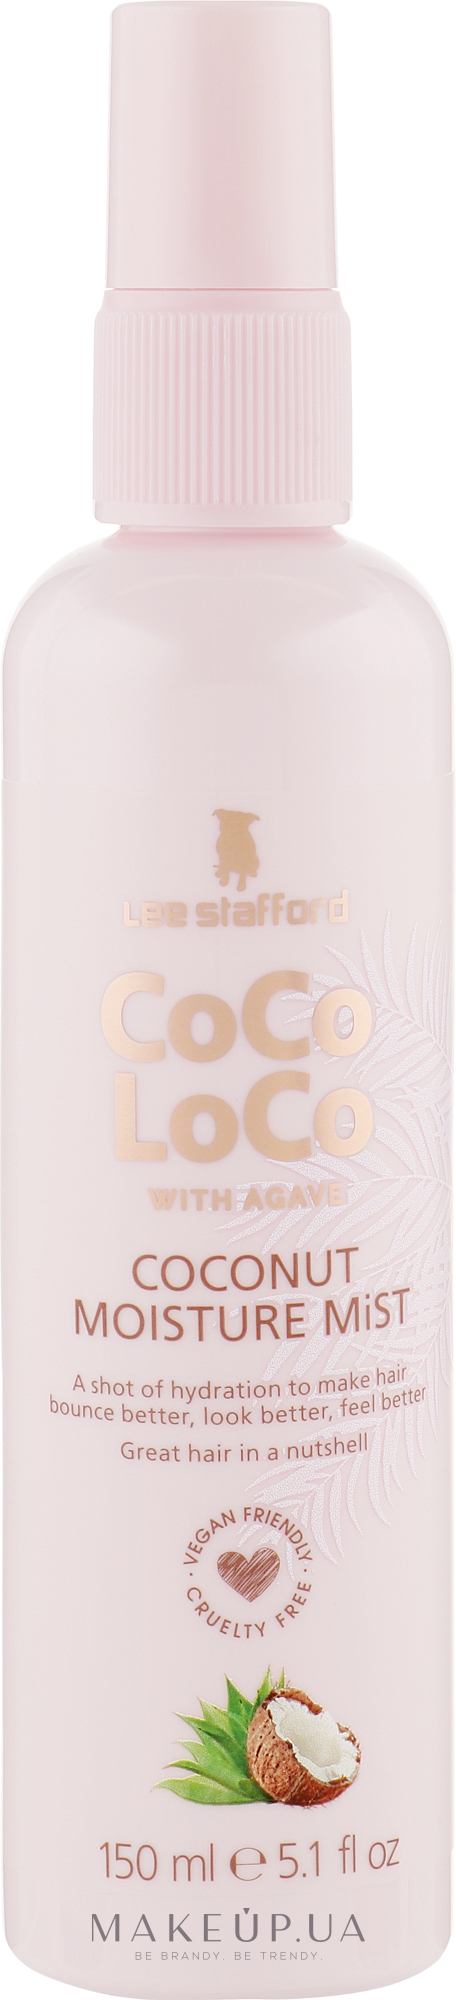 Увлажняющий спрей для волос - Lee Stafford Coco Loco With Agave Heat Protection Mist — фото 150ml